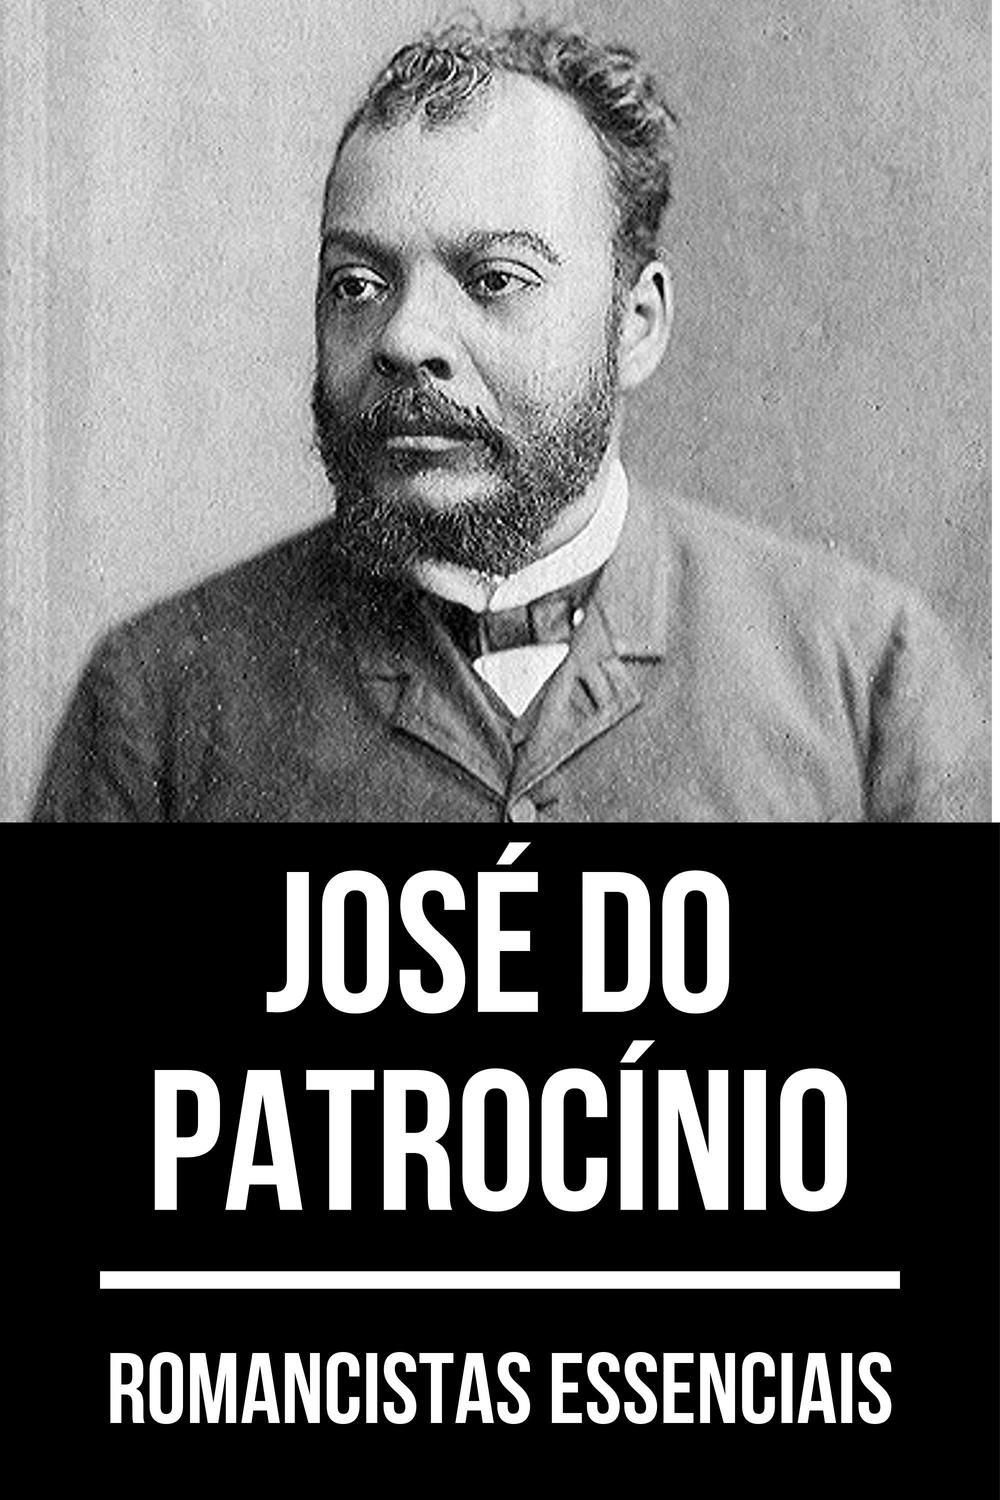 Romancistas Essenciais - José do Patrocínio - José do Patrocínio, August Nemo